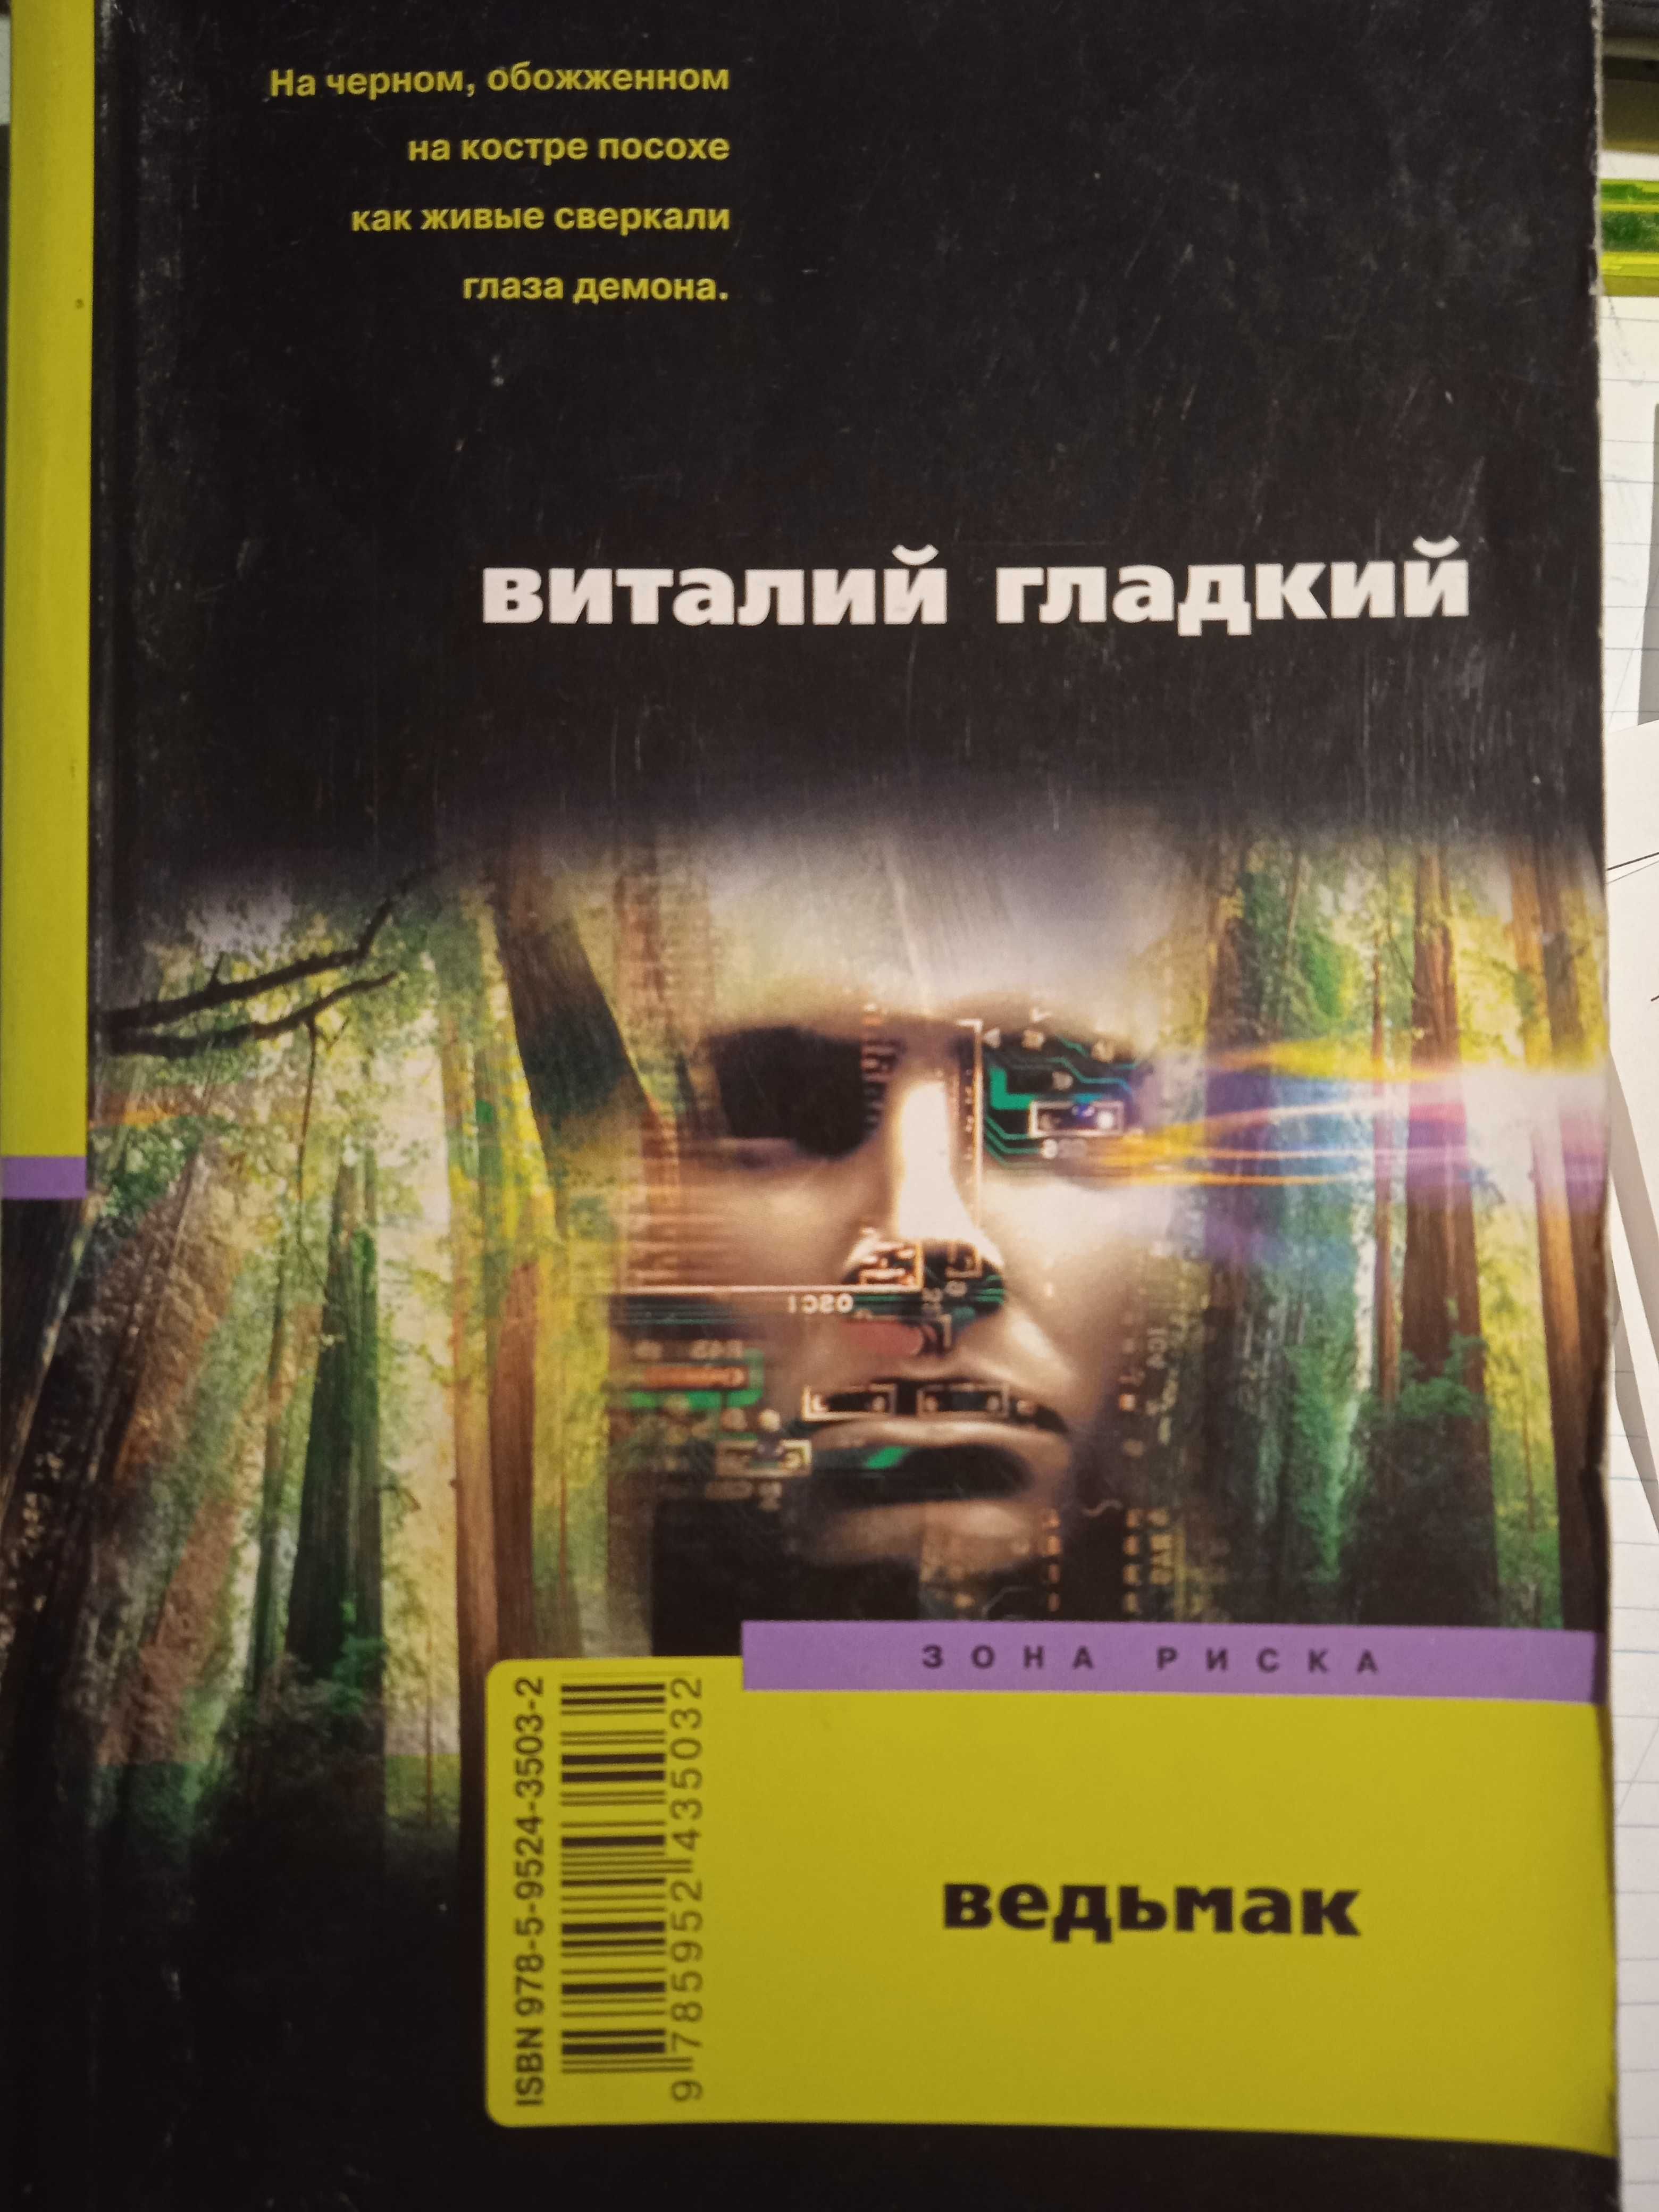 Книга Виталий Гладкий "Ведьмак" (роман), 2008, 382 с